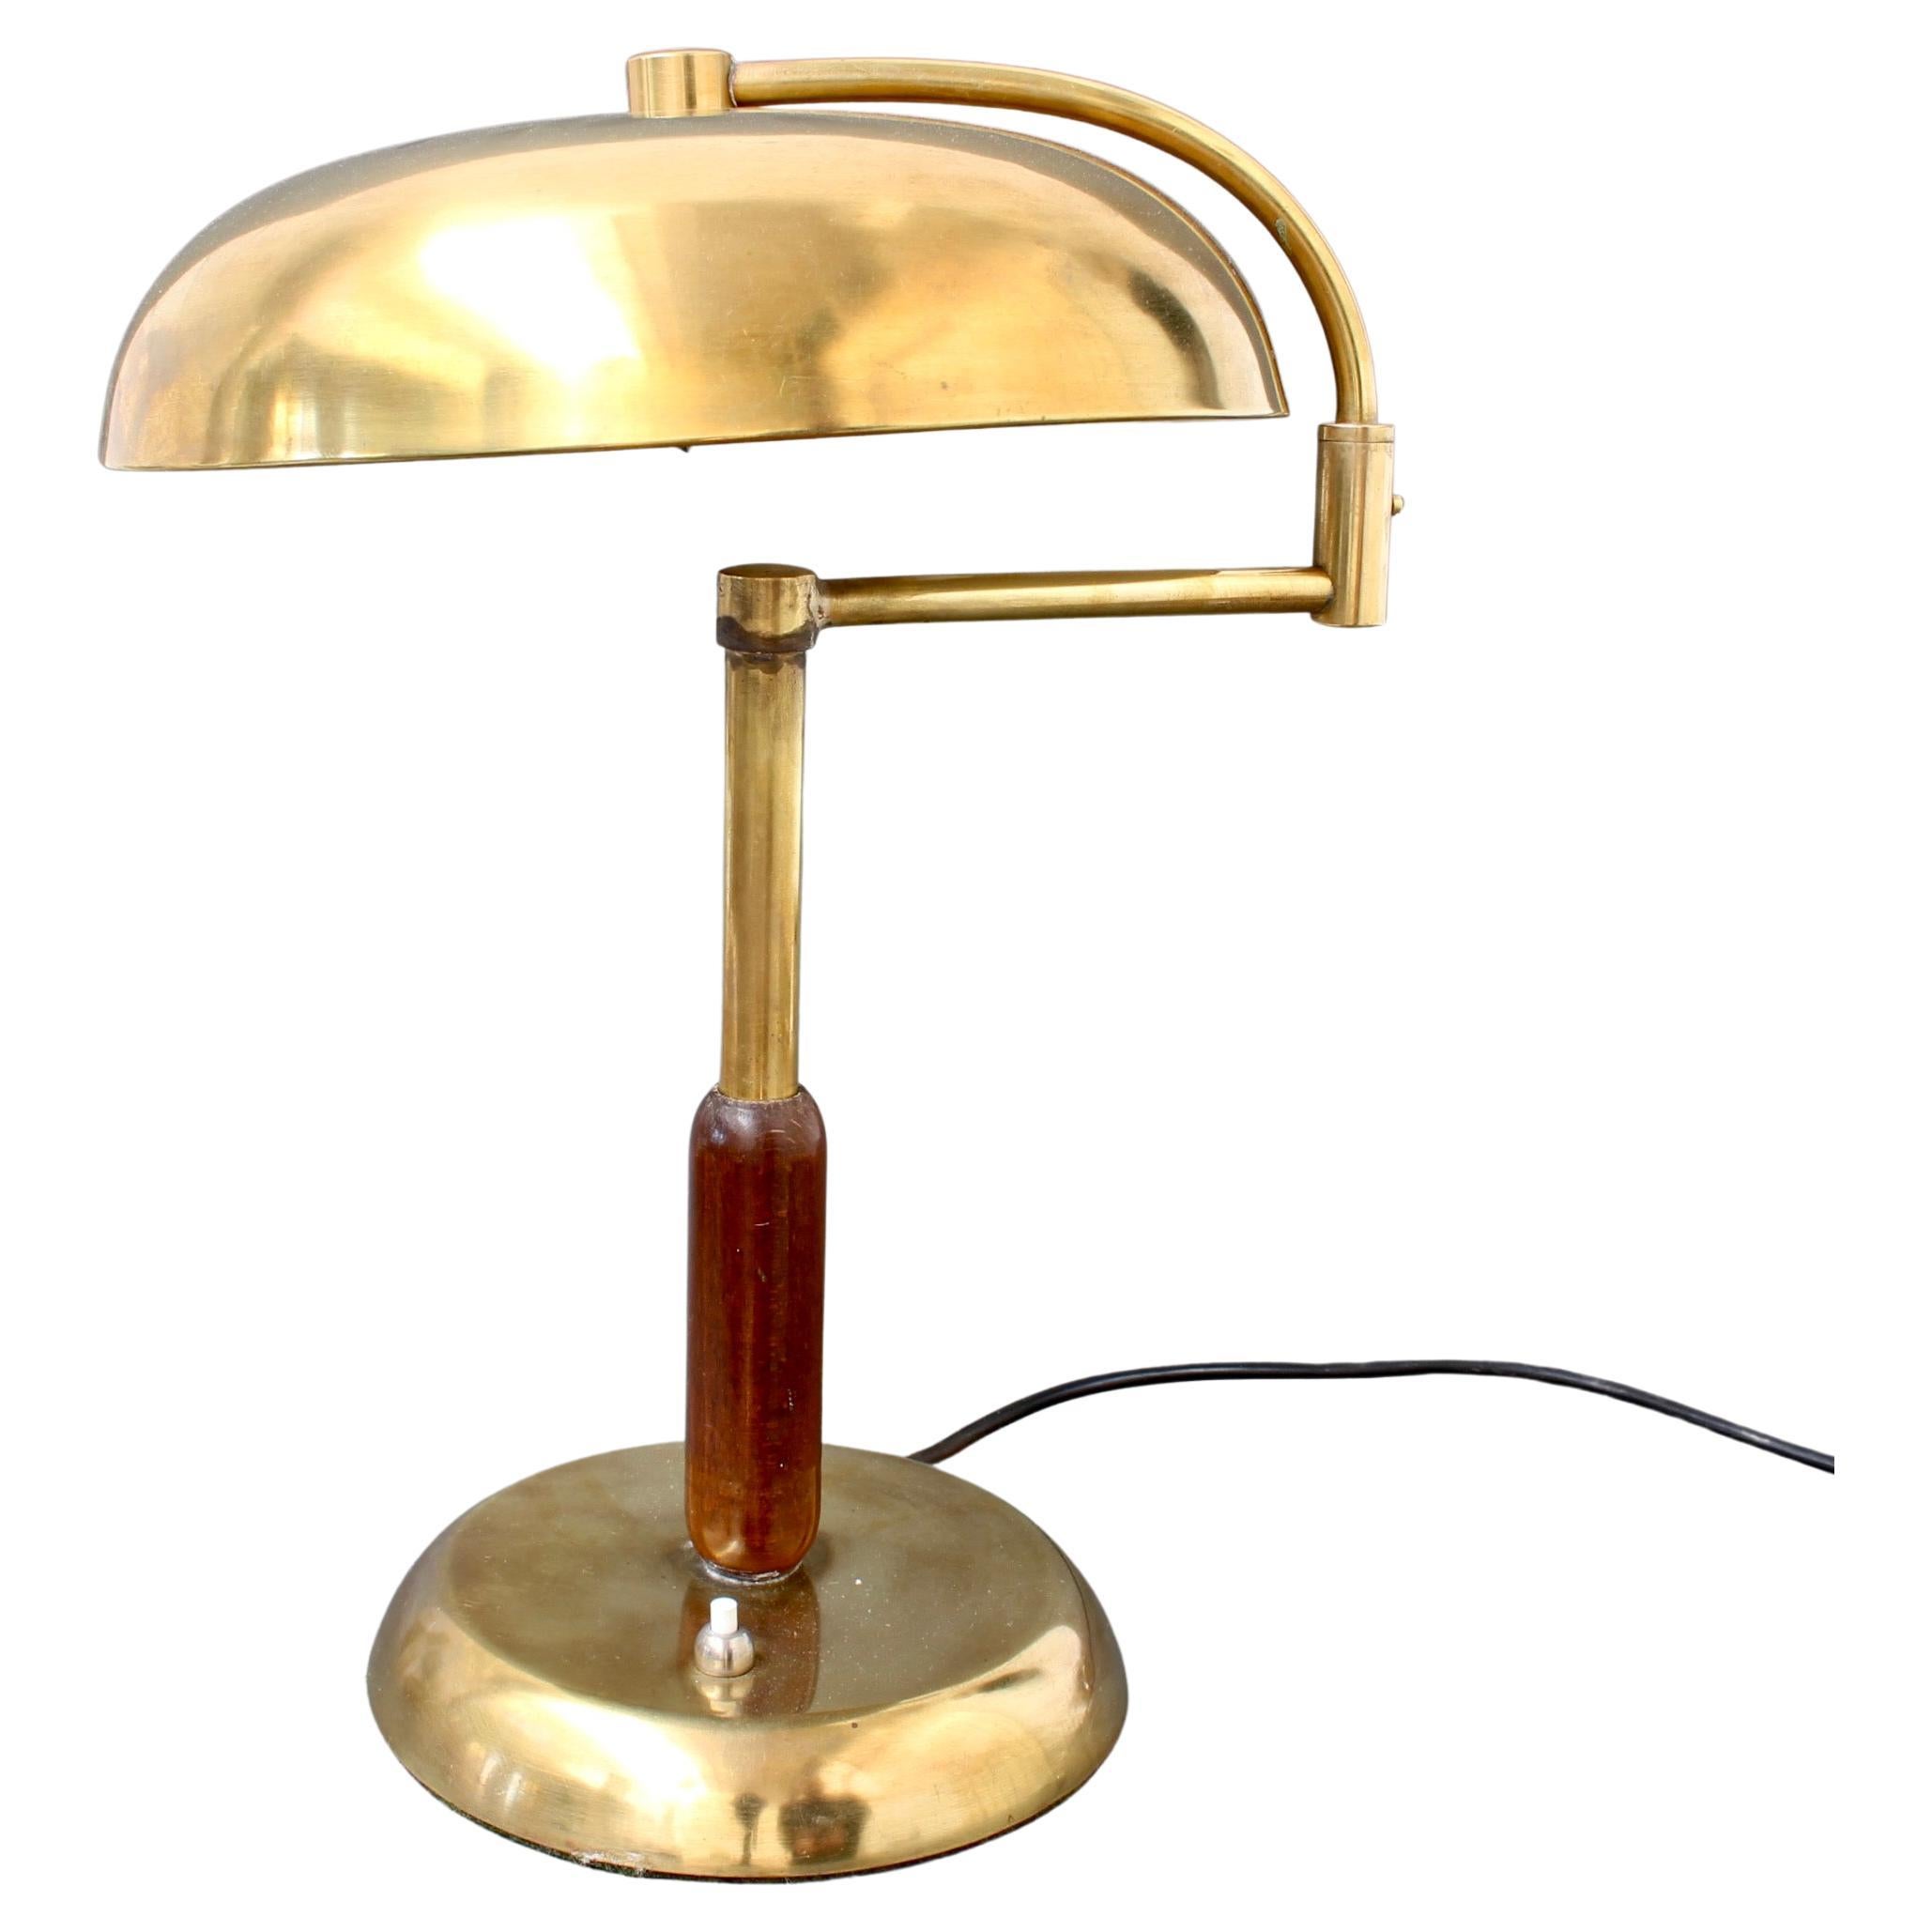 Lampe de bureau italienne en laiton du milieu du siècle dernier avec bras pivotant, vers les années 1950